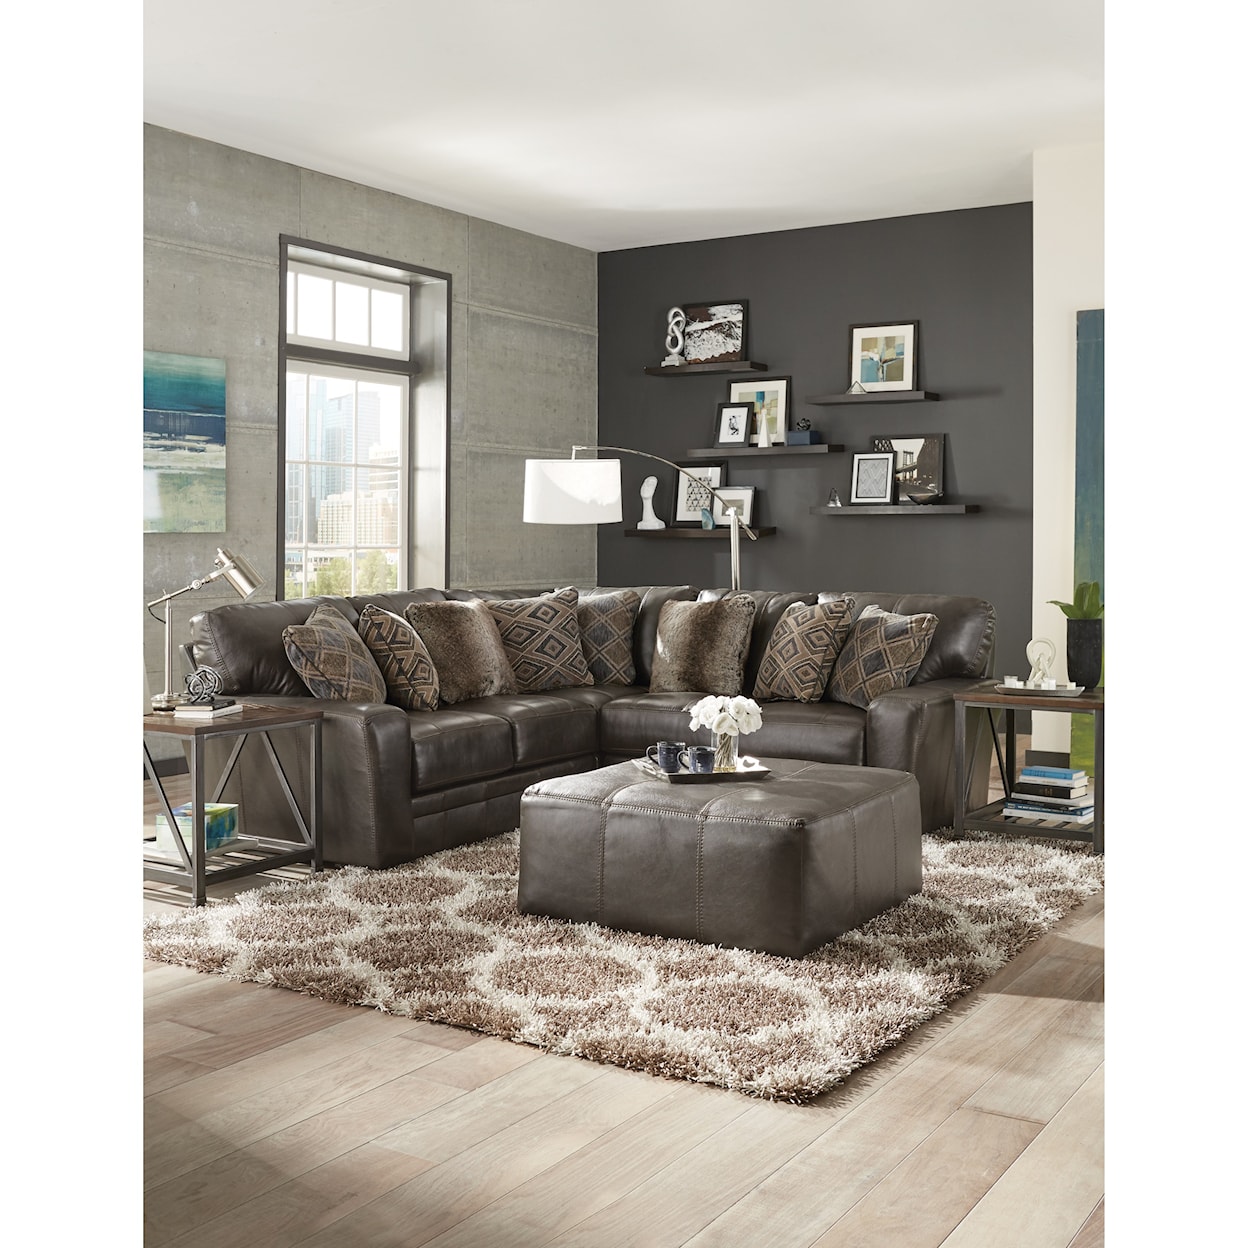 Carolina Furniture 4378 Denali 2 Piece Sectional